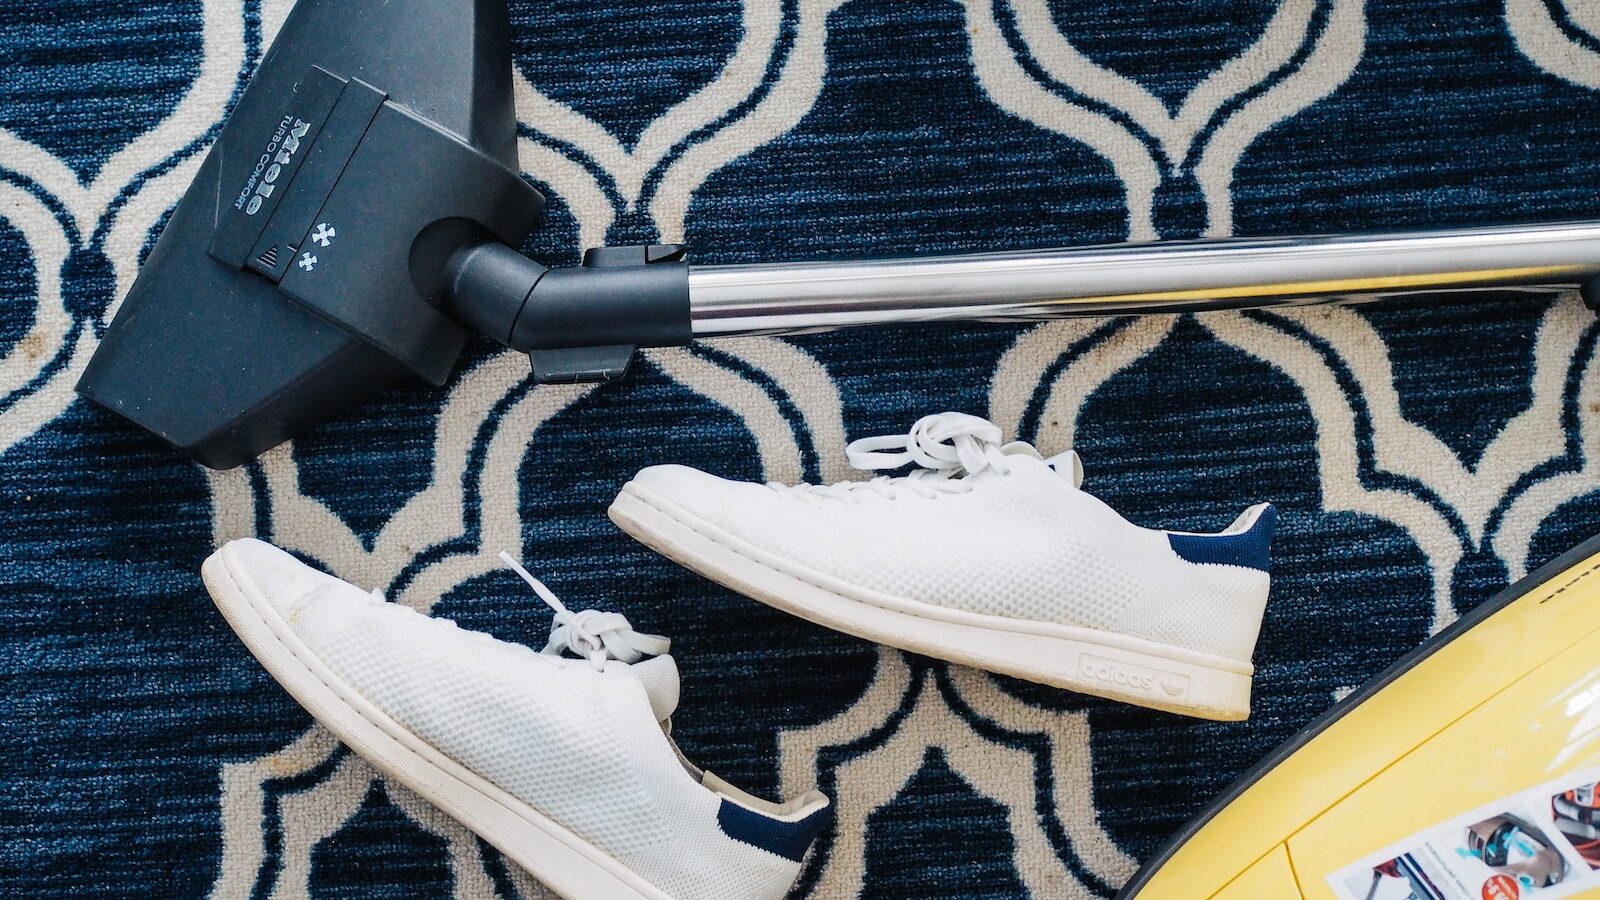 pair of white sneakers beside vacuum cleaner